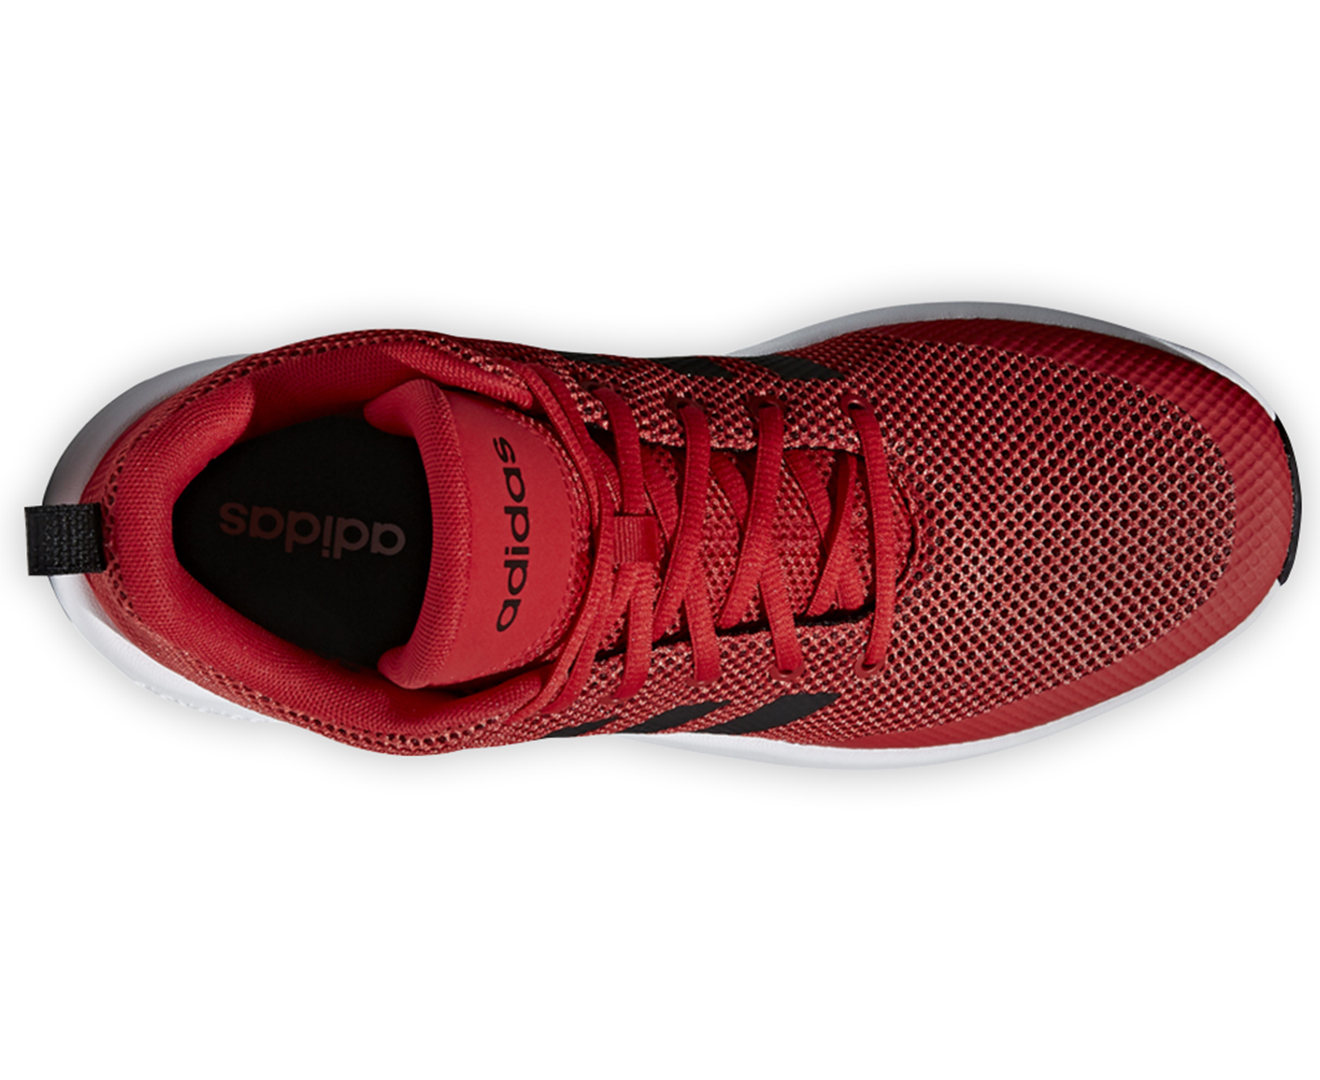 Adidas Men's SPD End2End Basketball Shoe - Scarlet/Core Black/White ...